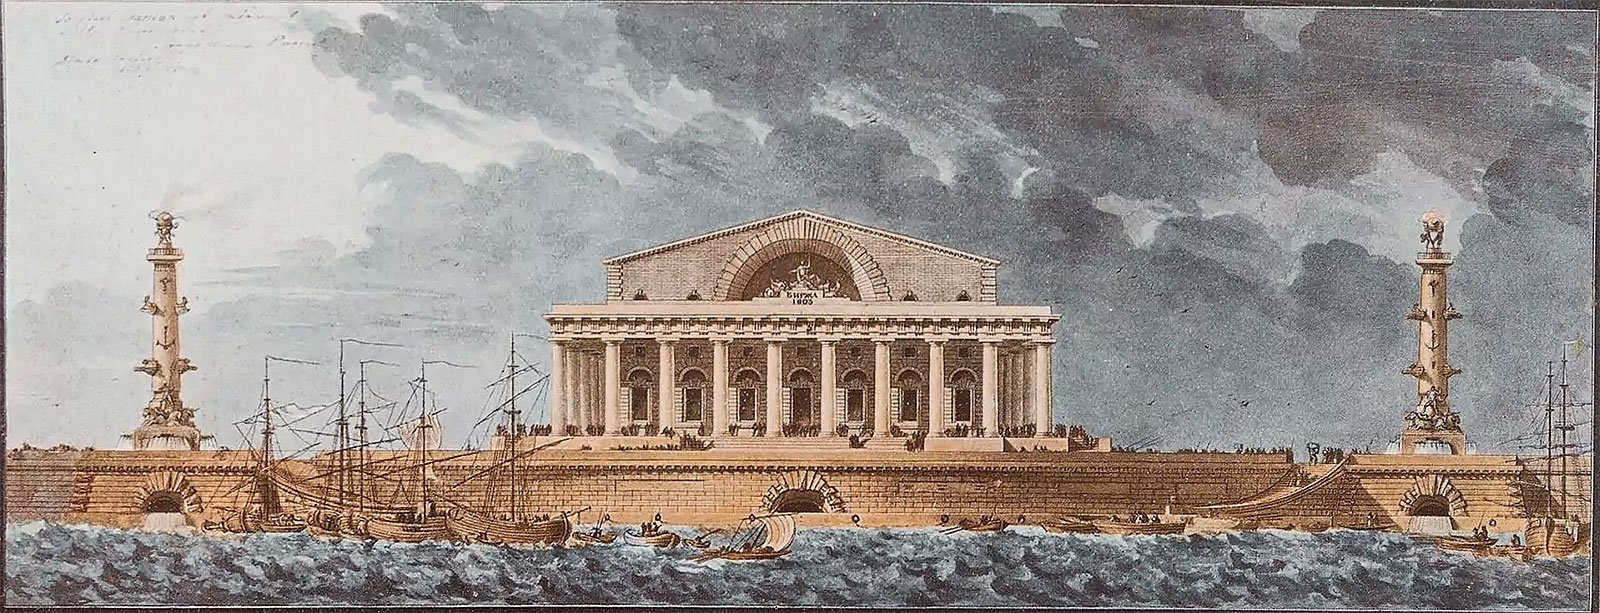 Четвертый утвержденный проект Биржи в Стрелки Василькового острова архитектора Тома де Томона, 1804 год